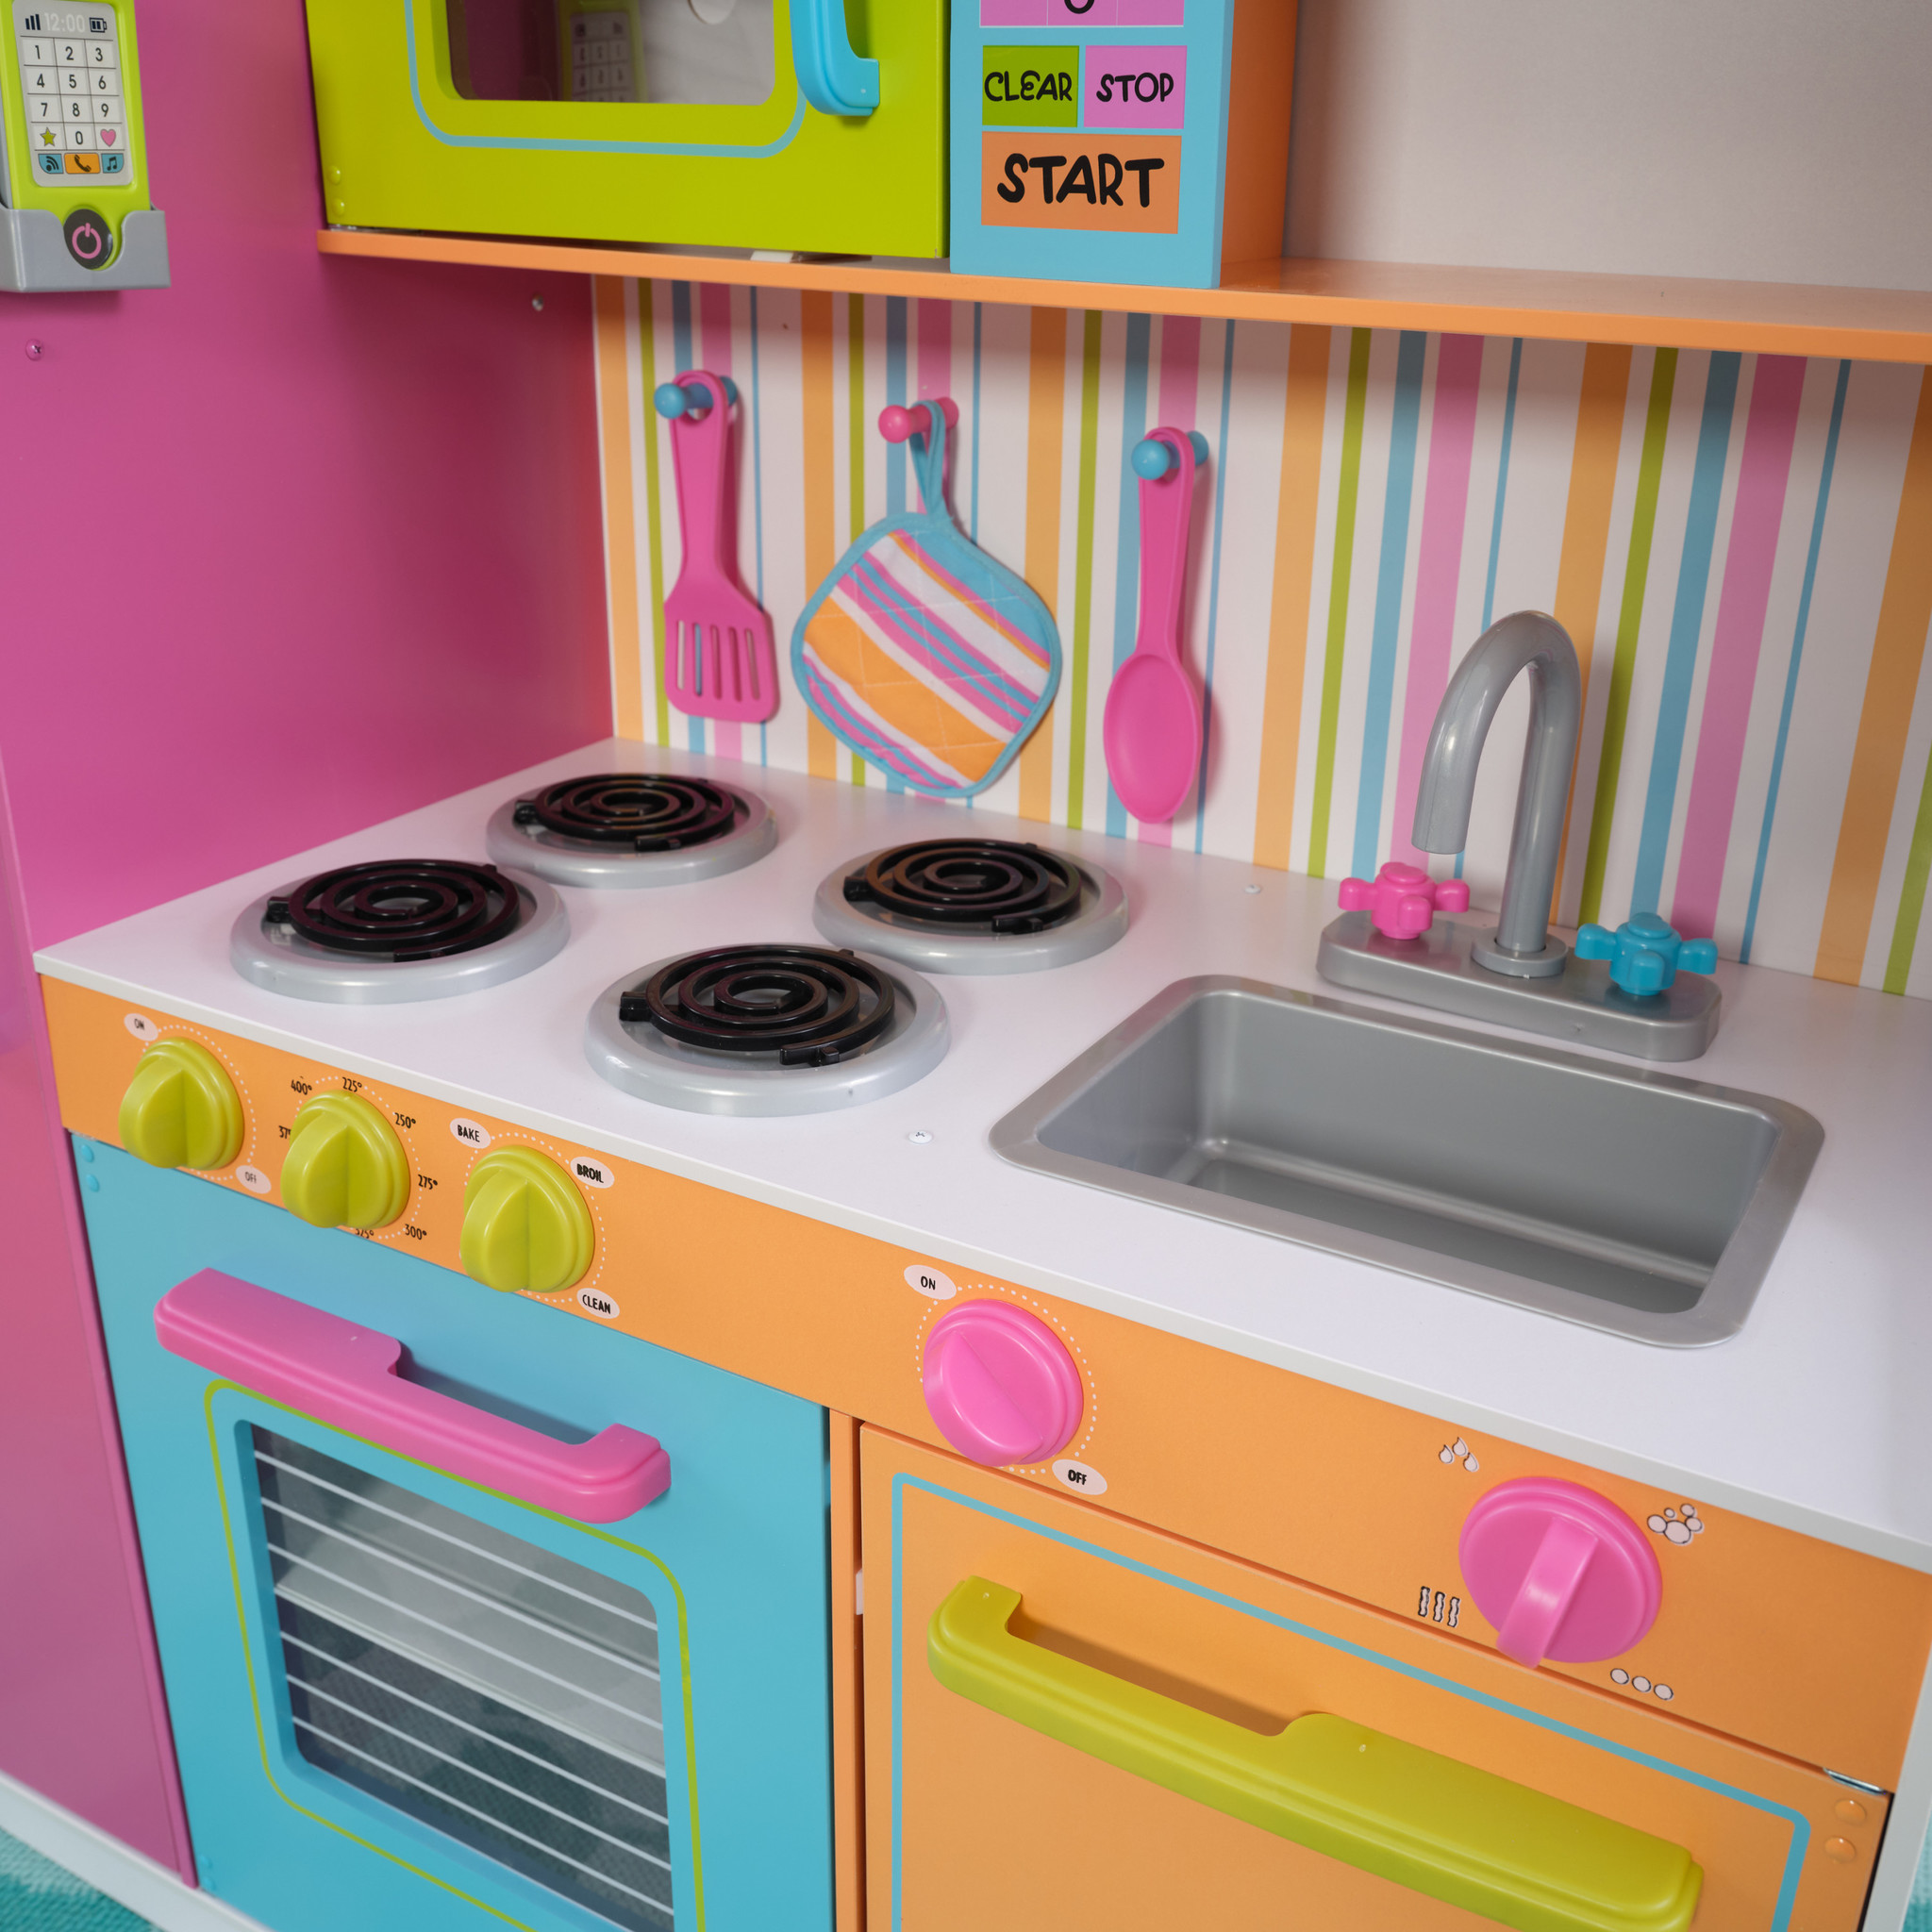 Cuisine enfant multi colorée - kitchenette jouet pour fille - Jeu